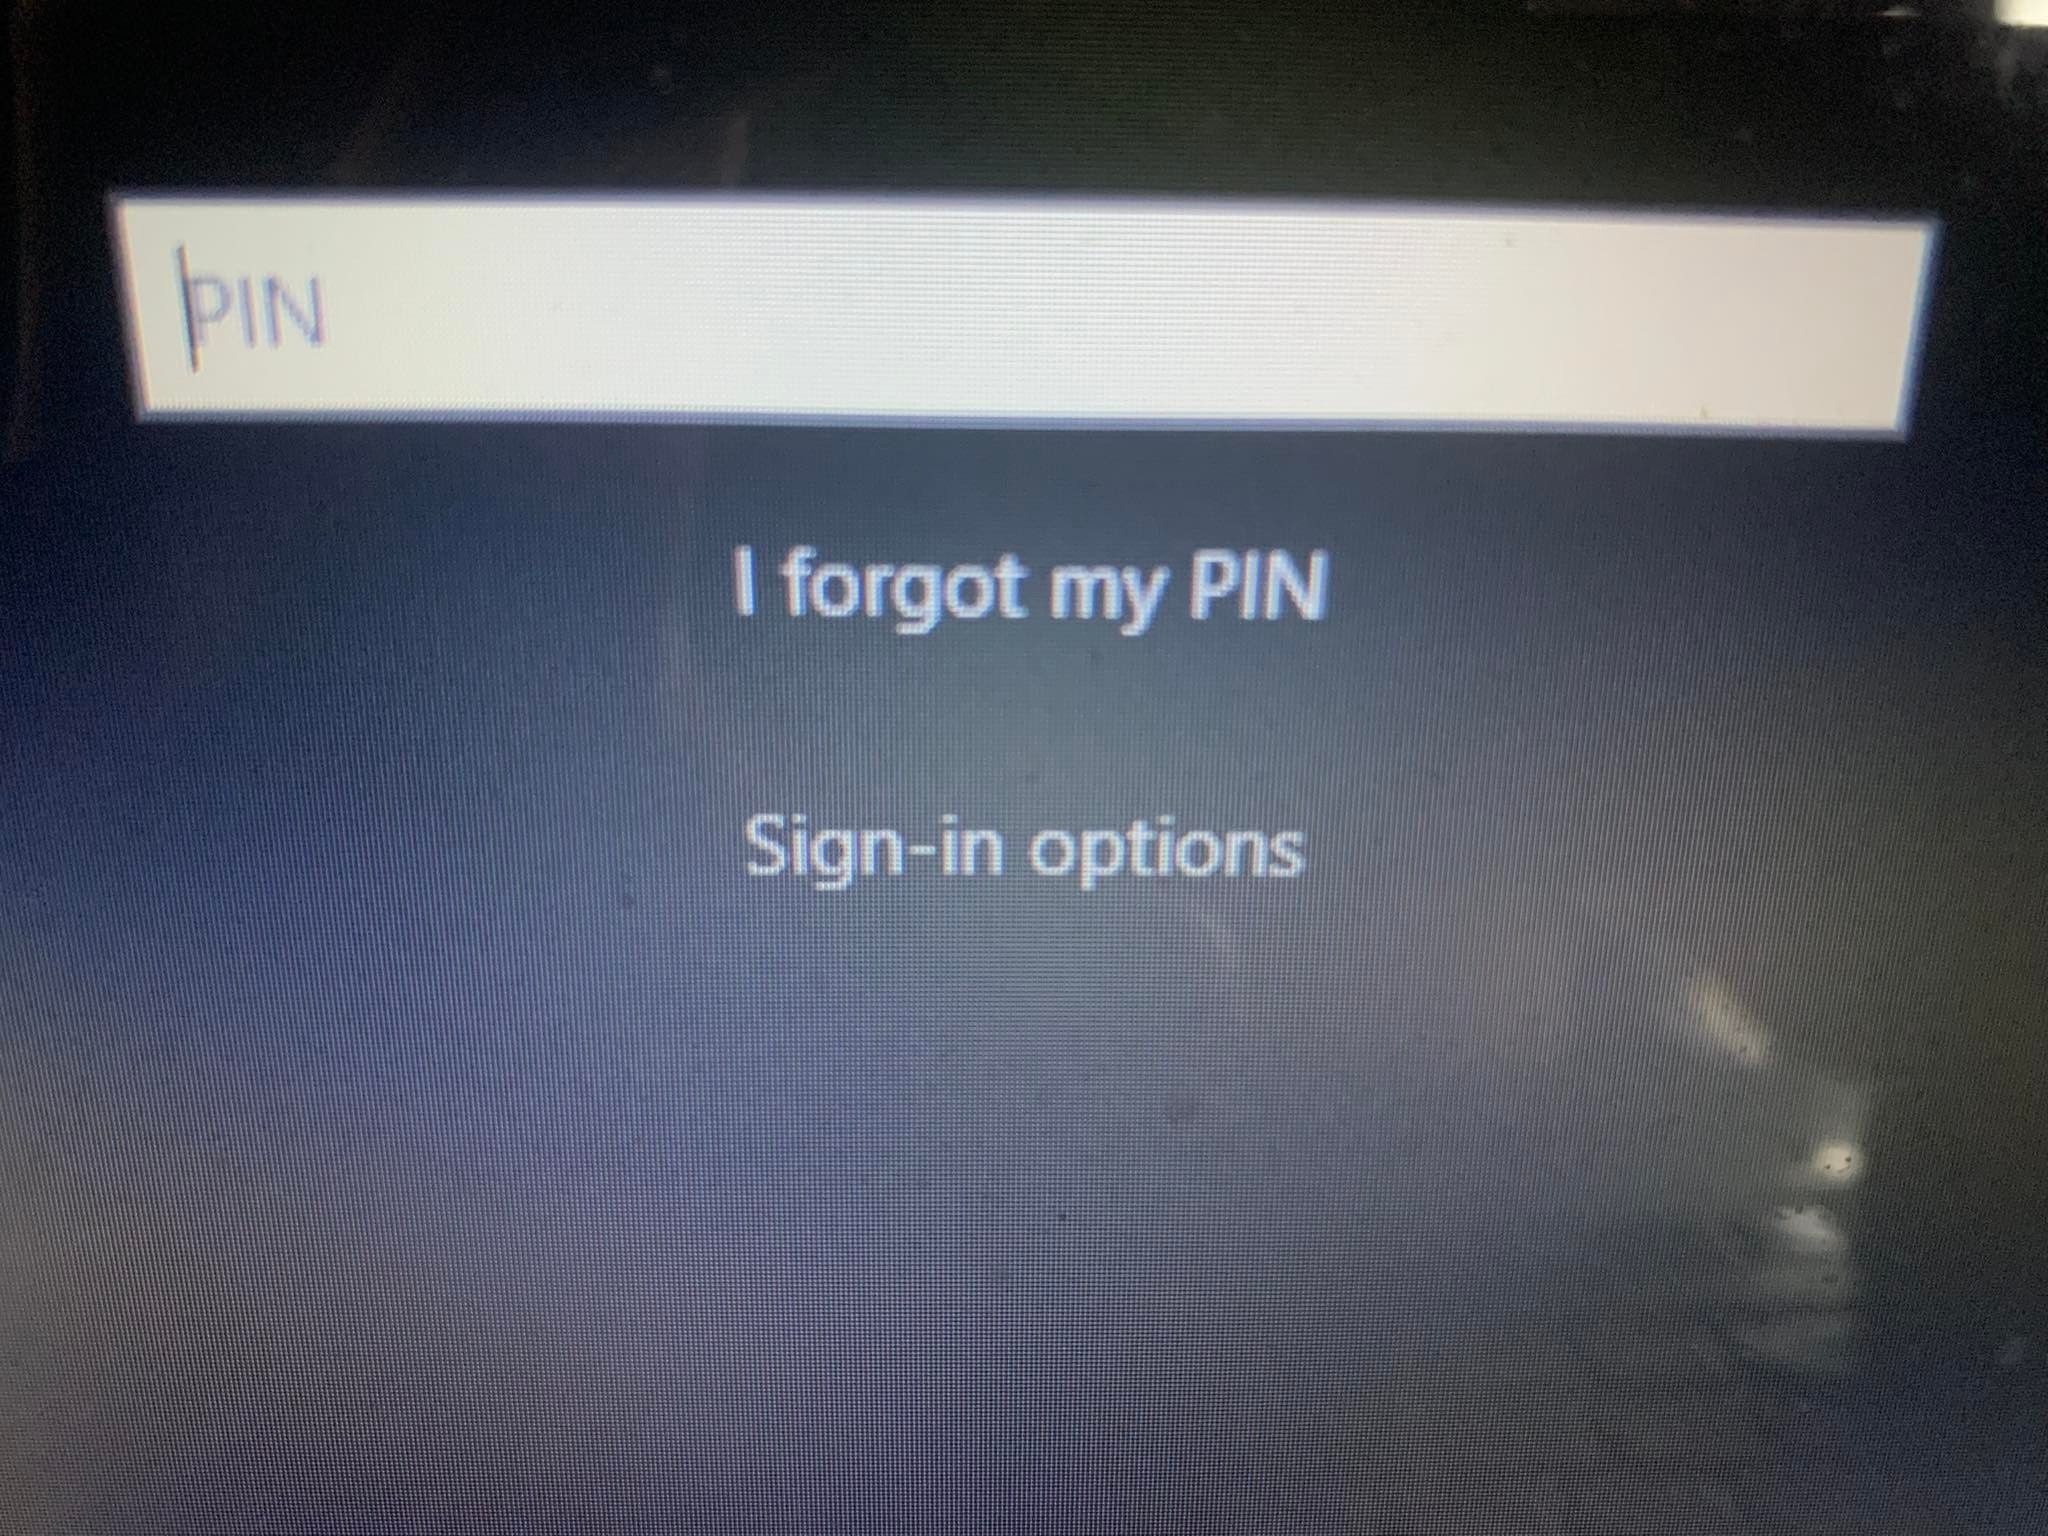 在 Windows 主屏幕中单击“我忘记了 PIN”